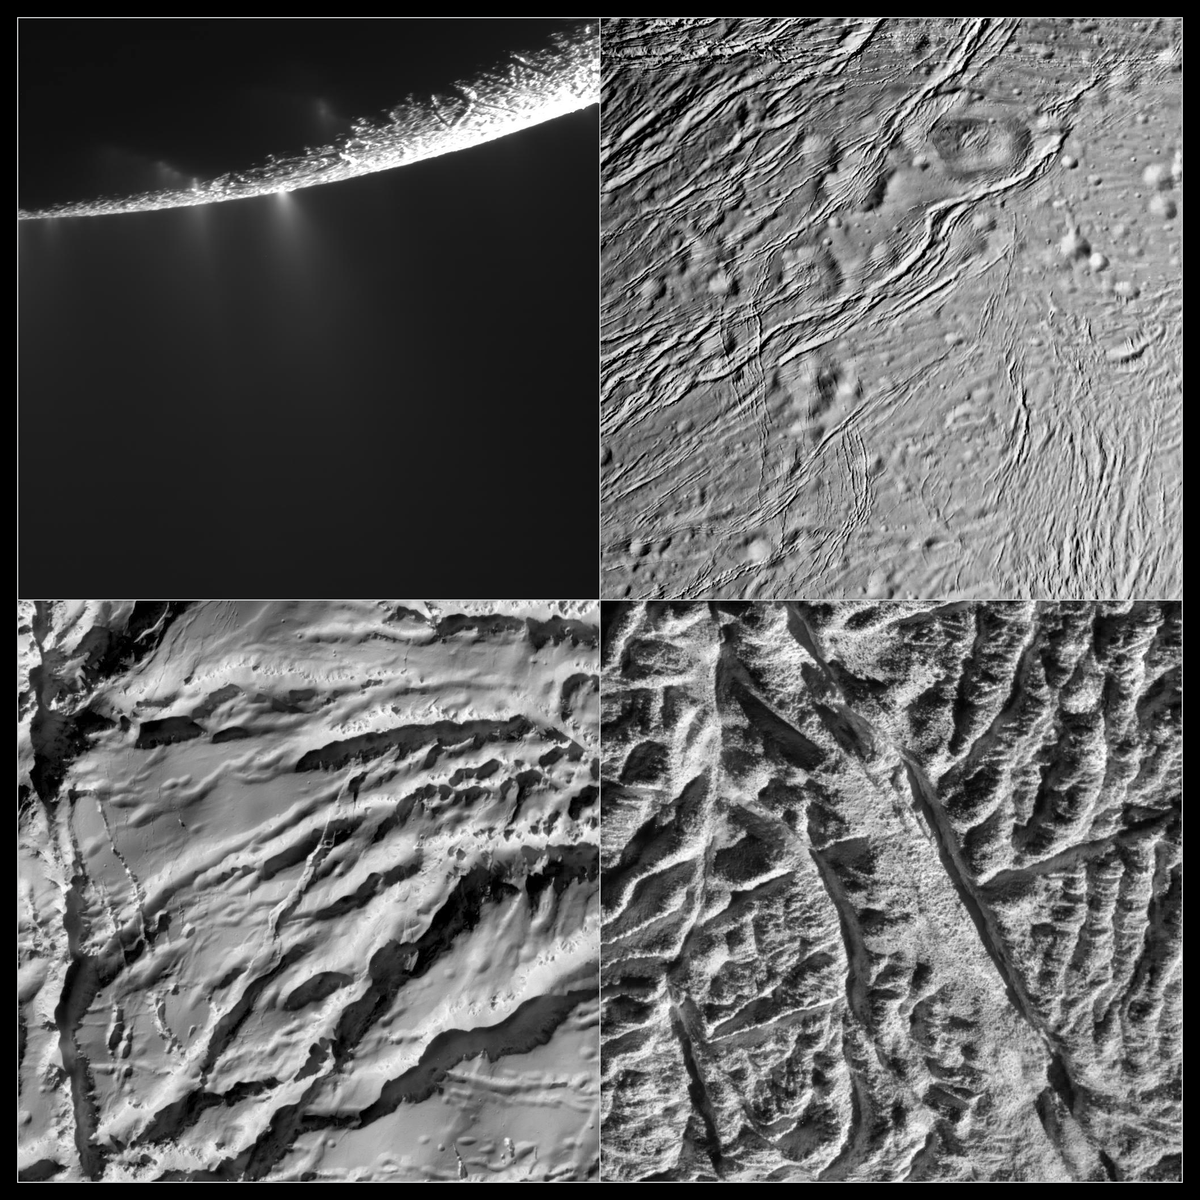 Enceladus Rev 121 Flyby Nov 21 2009